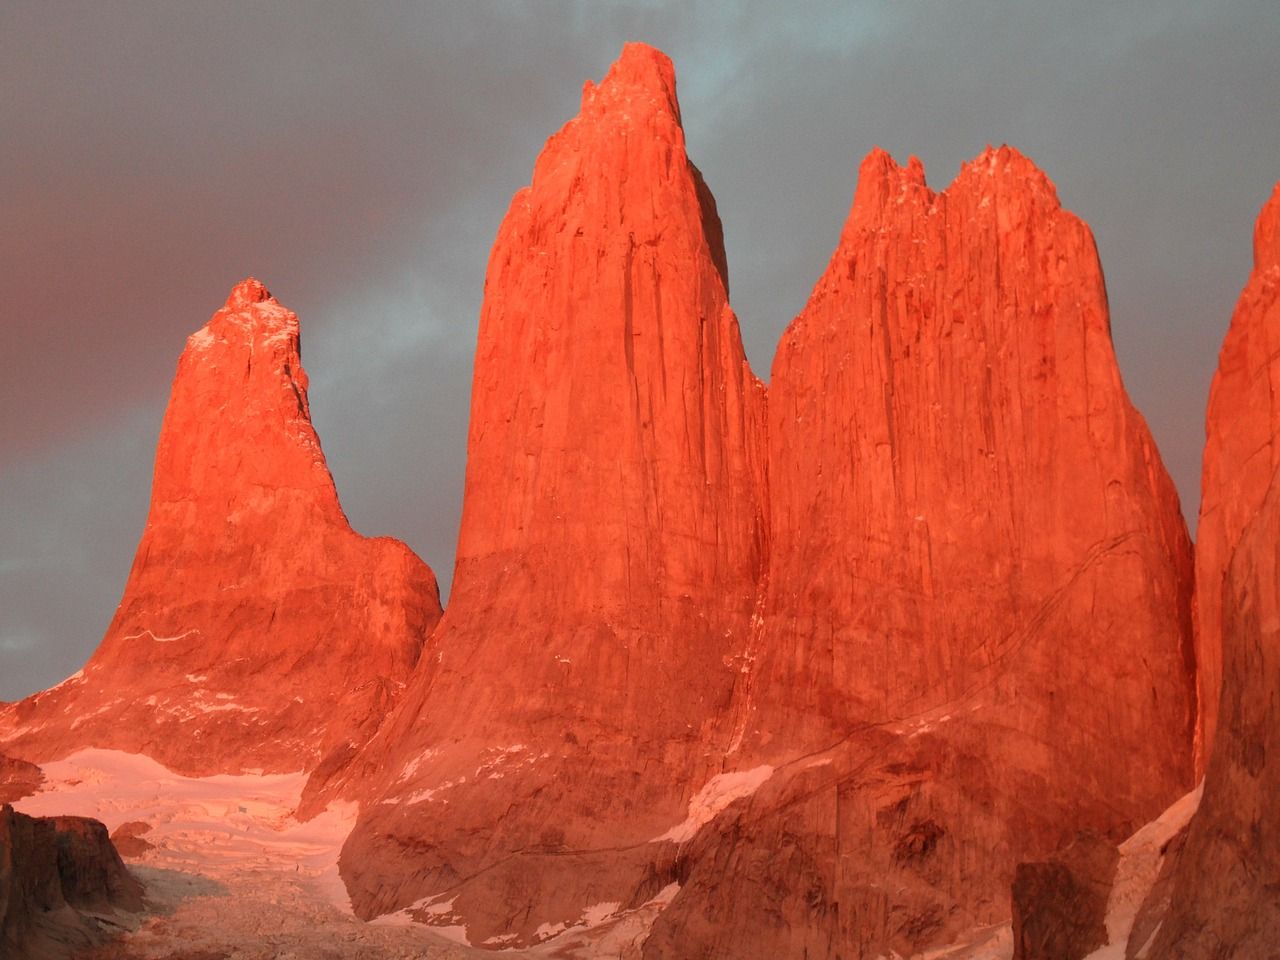 Die zerklüfteten Felsen des "Torres del Paine" besitzen einer Ruf der tausend Farben und tausen Stimmen, die deutlich werden wenn die Sonne sich senkt und der Wind sich erhebt!